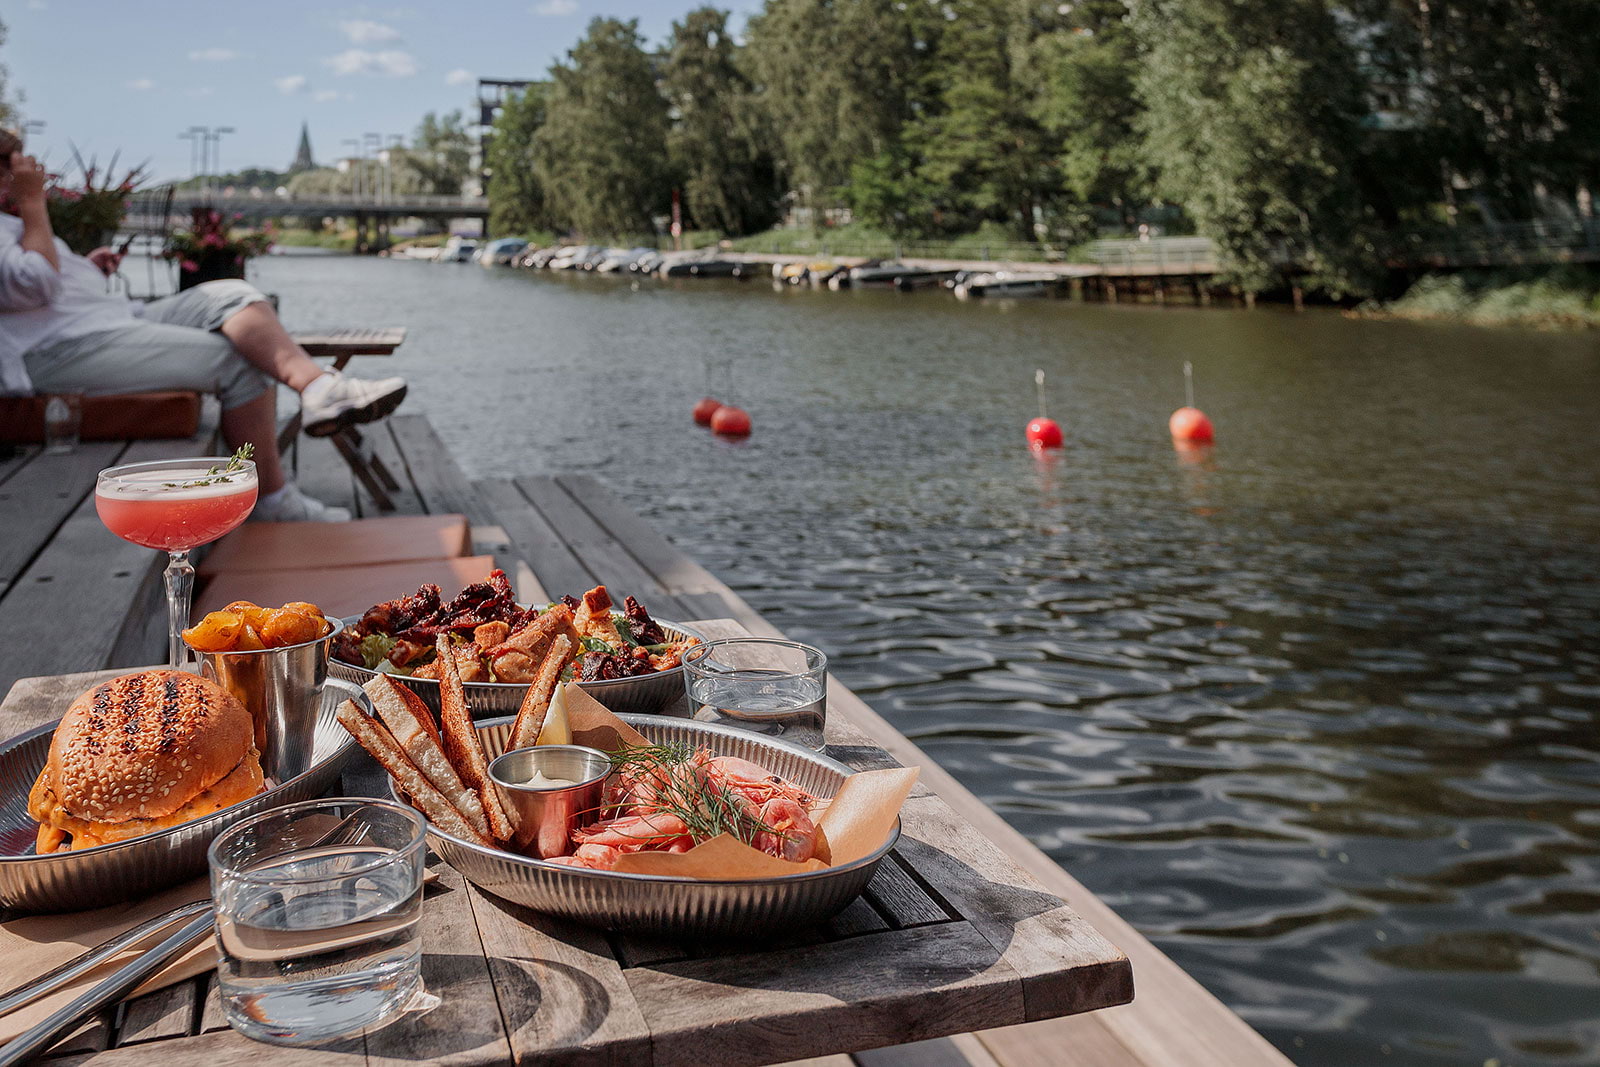 Restaurang Göteborg – Uteserveringar i Hammarby sjöstad